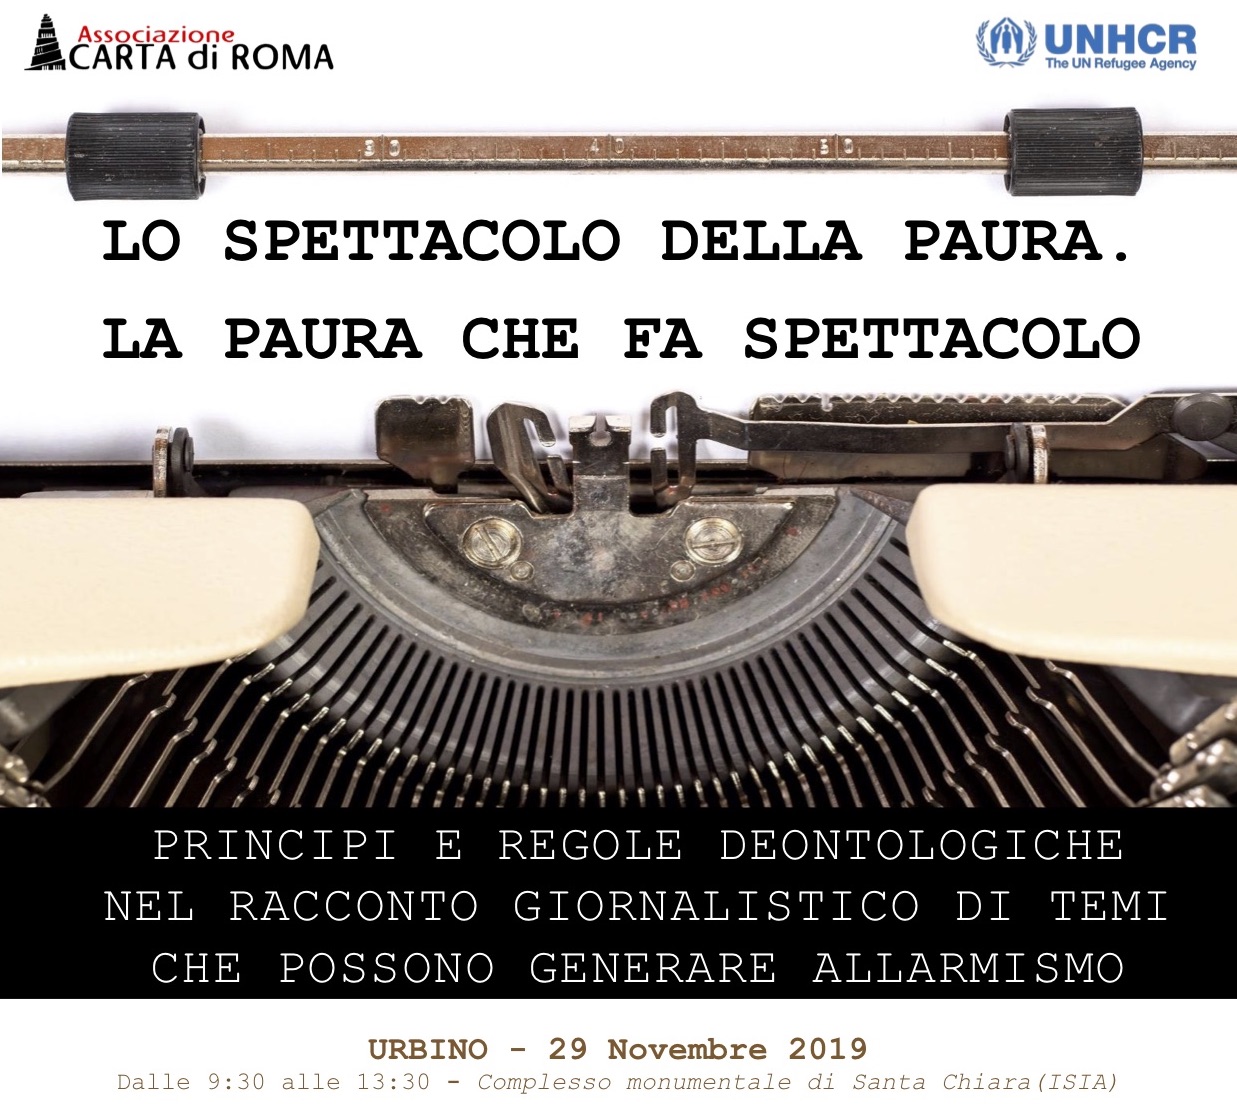 Appuntamento il 29 novembre ad Urbino con una formazione su media e migrazioni